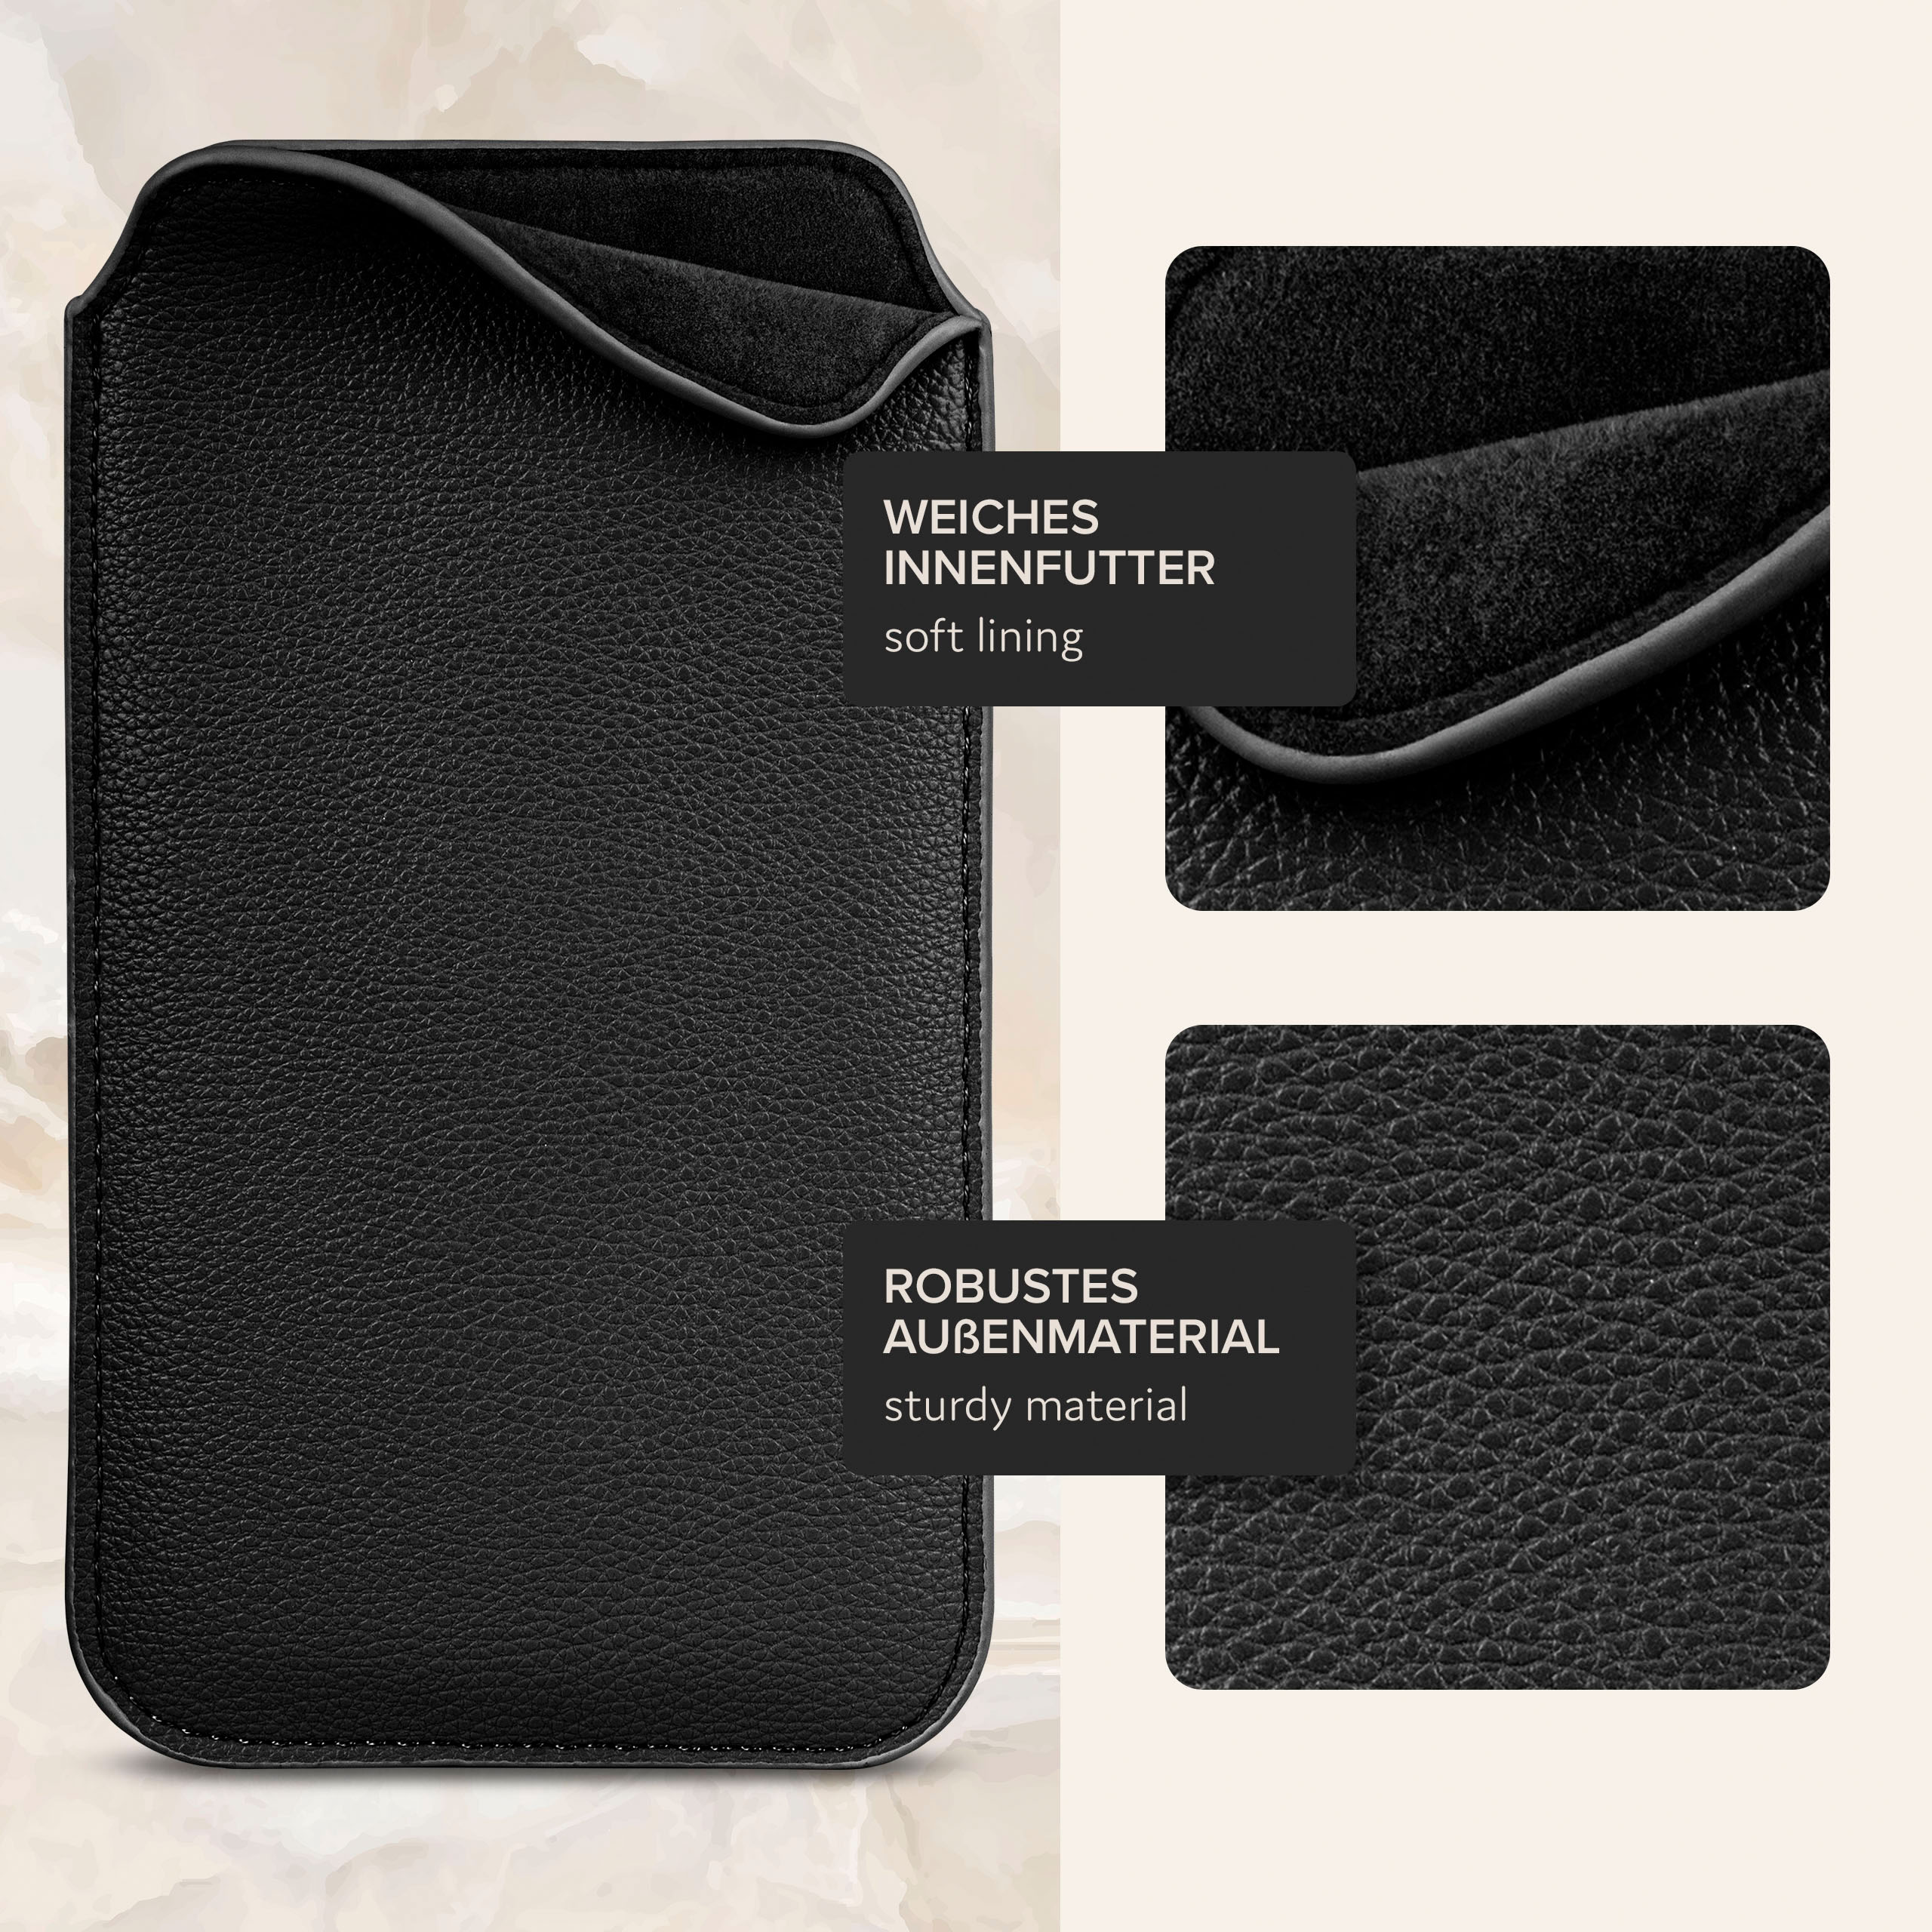 Zuglasche, J5 Full Schwarz Galaxy Cover, Einsteckhülle (2016), Samsung, mit ONEFLOW